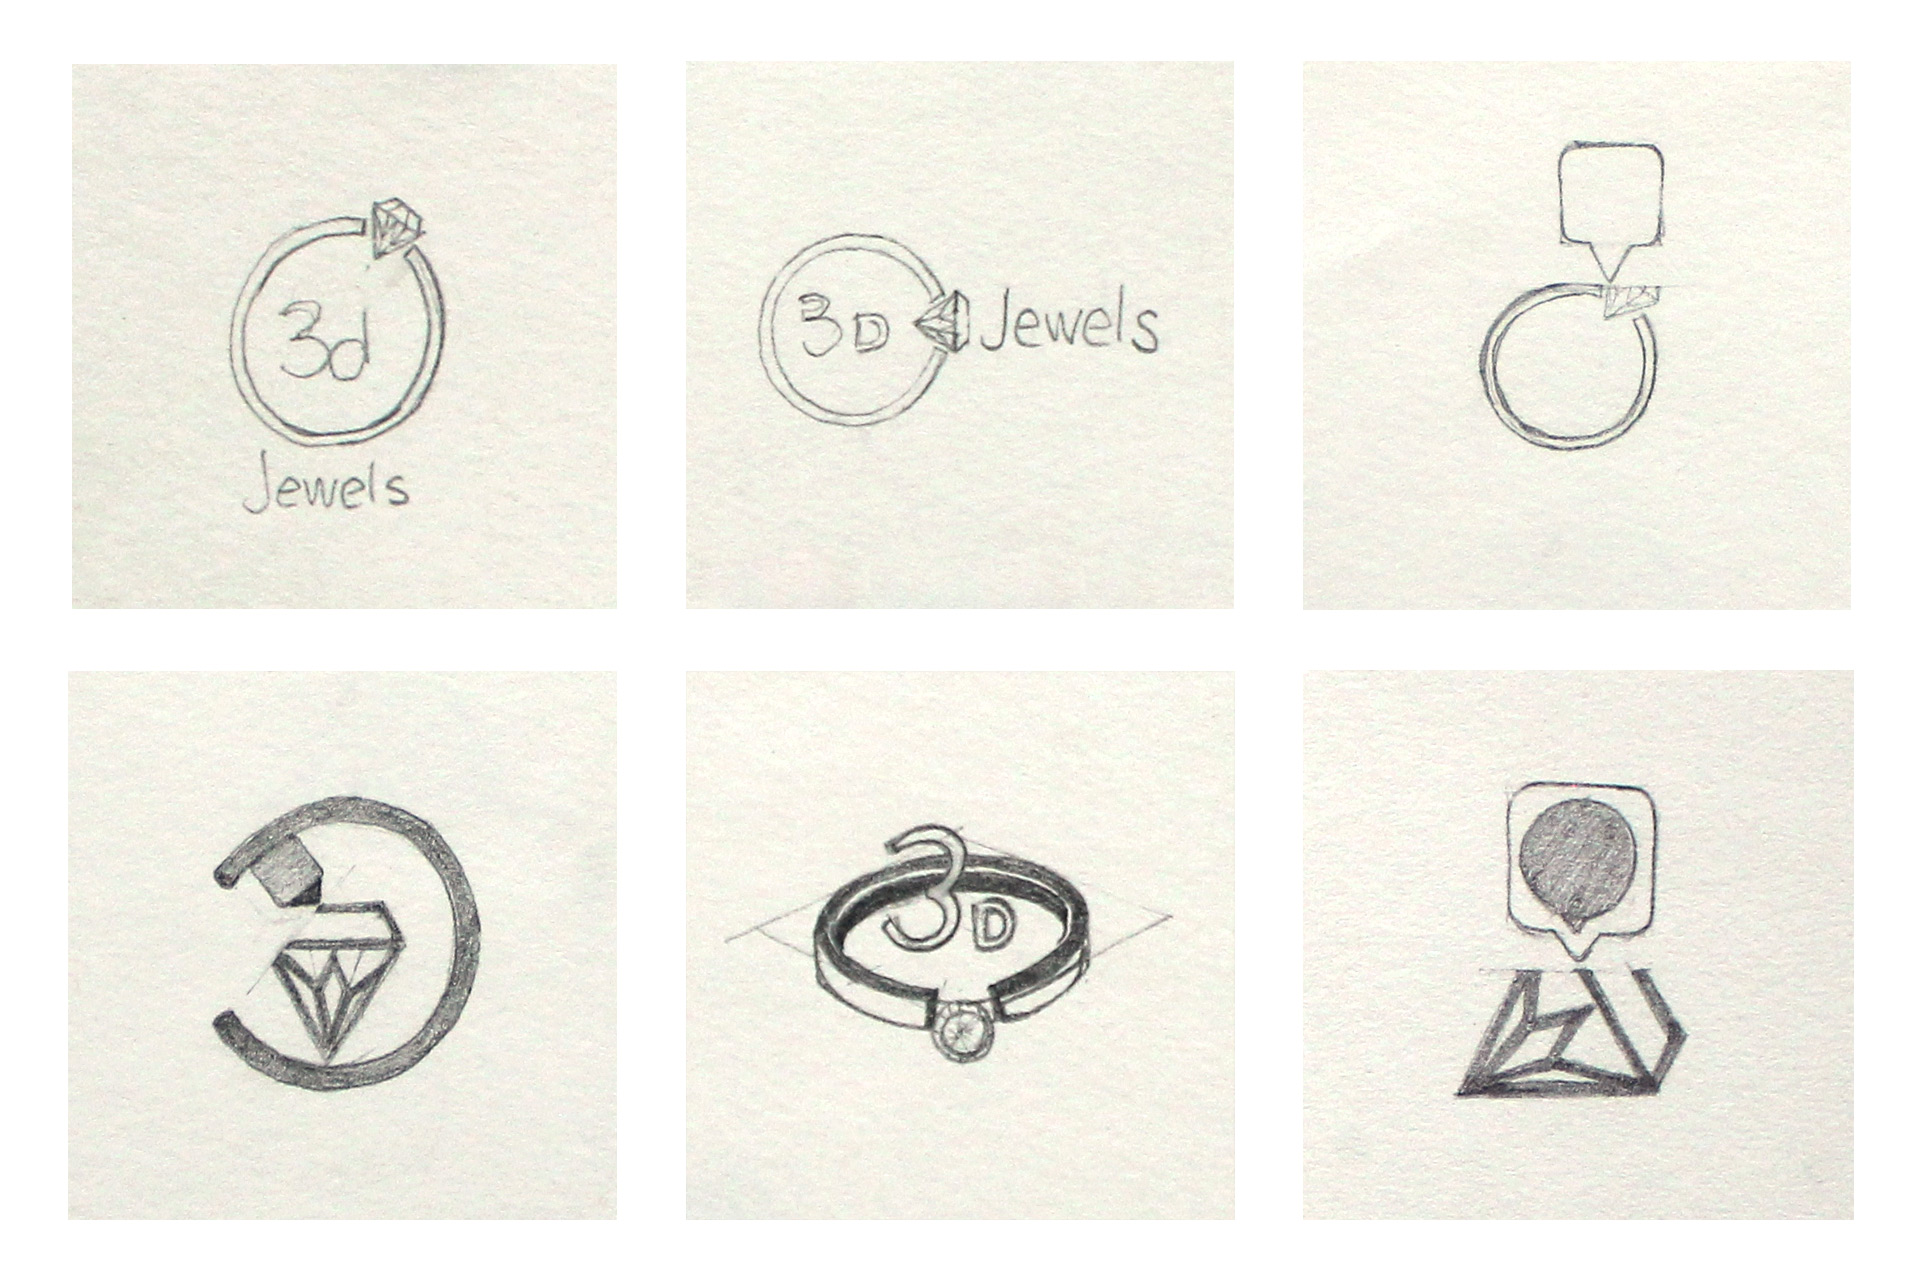 3d Jewels Logo Sketches